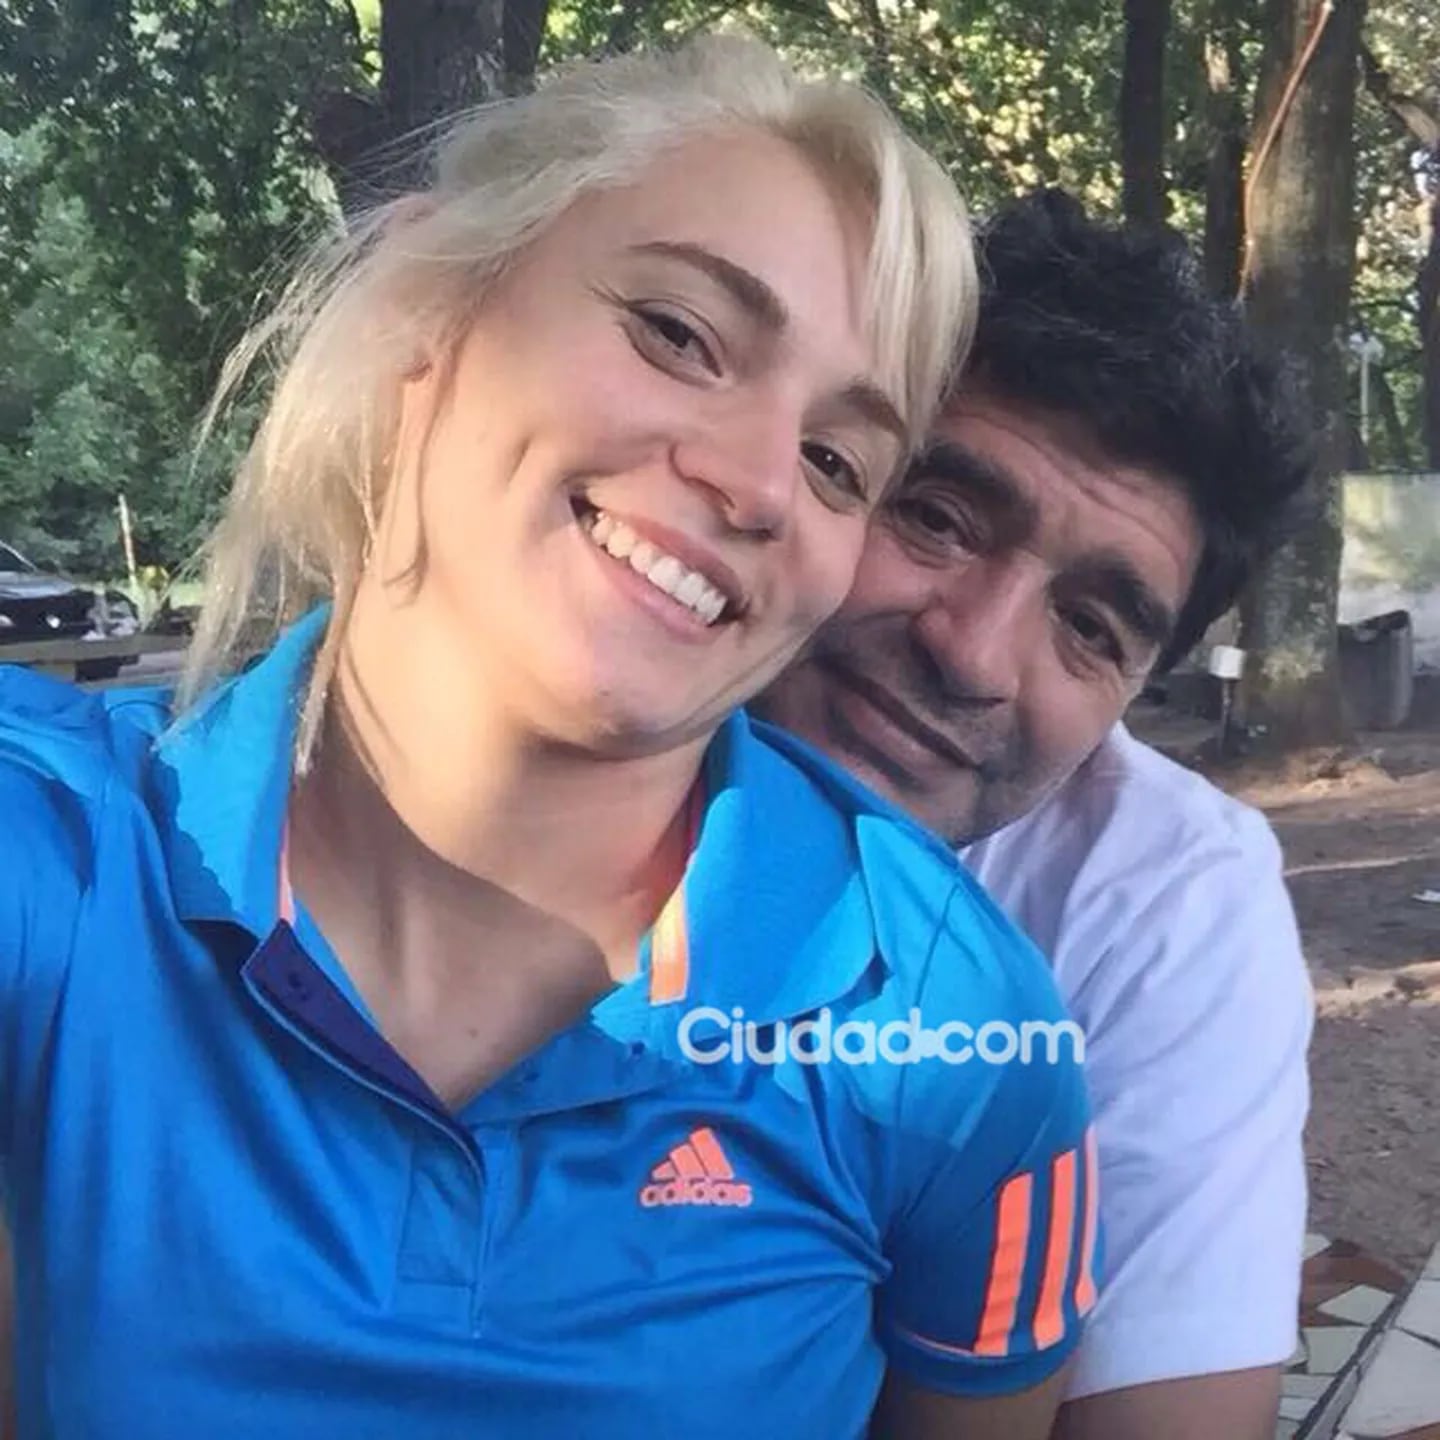 Diego Maradona y Rocío Oliva, enamorados (Foto: Ciudad.com)